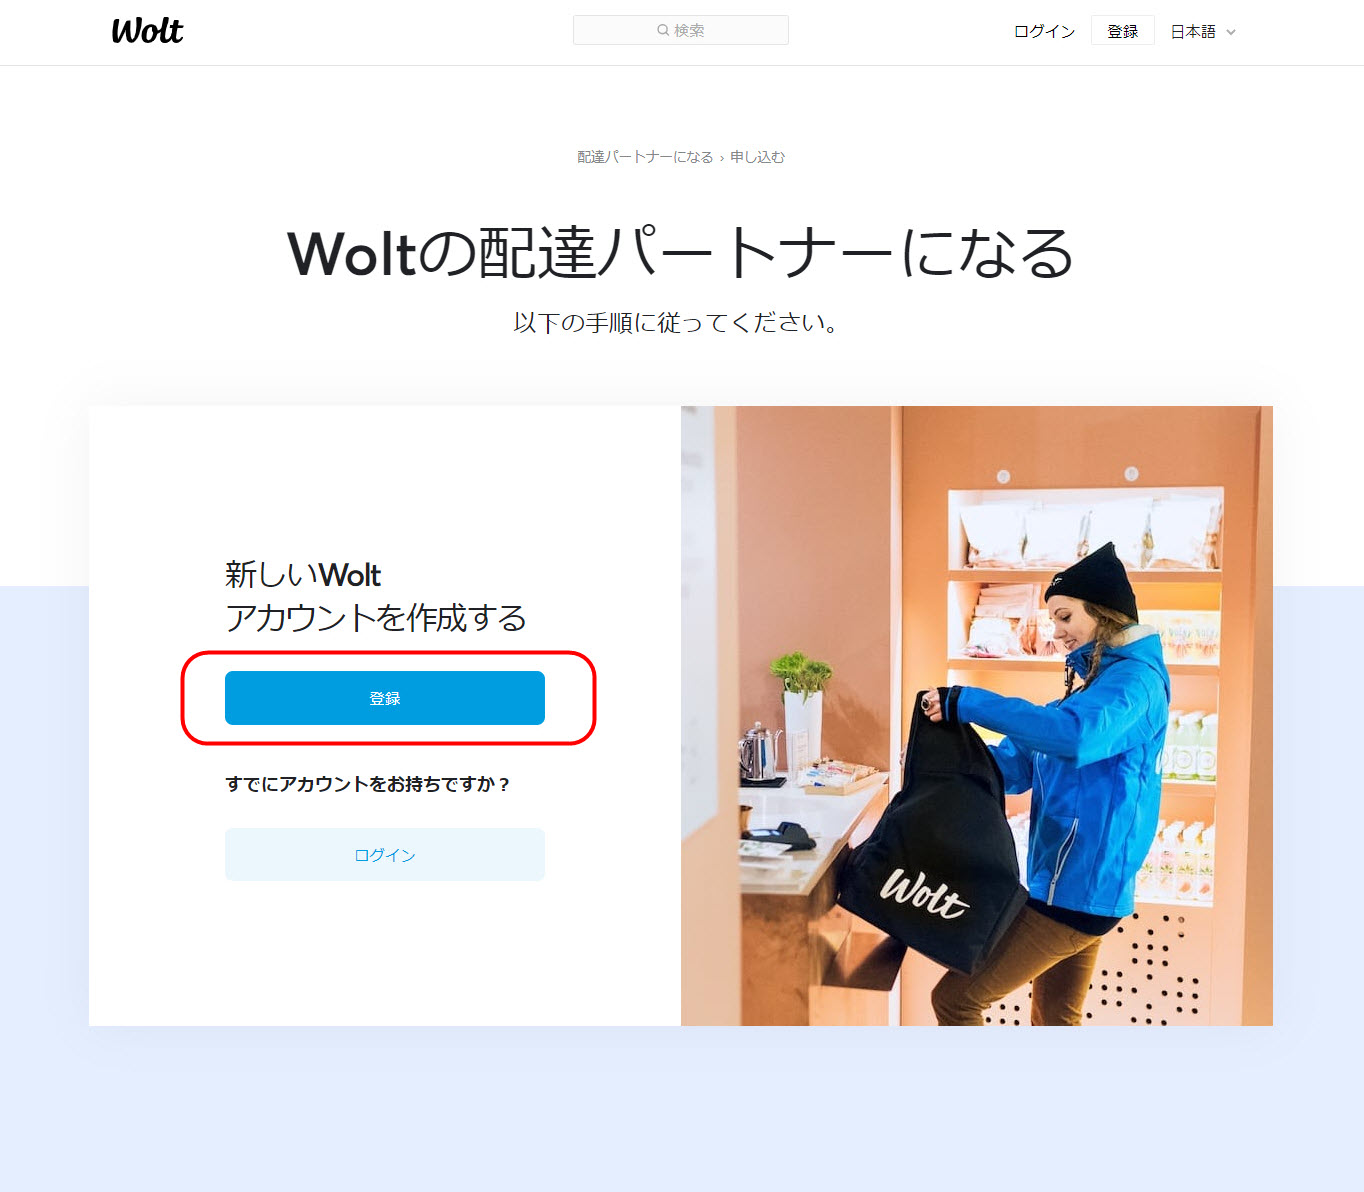 Woltとは Wolt ウォルトとは ウォルト 始め方 登録方法 配達パートナー 配達員 注文方法 頼み方 サービスエリア 配達エリア 地域 範囲 拡大予定 支払い方法 注文の仕方 注文の流れ 東京